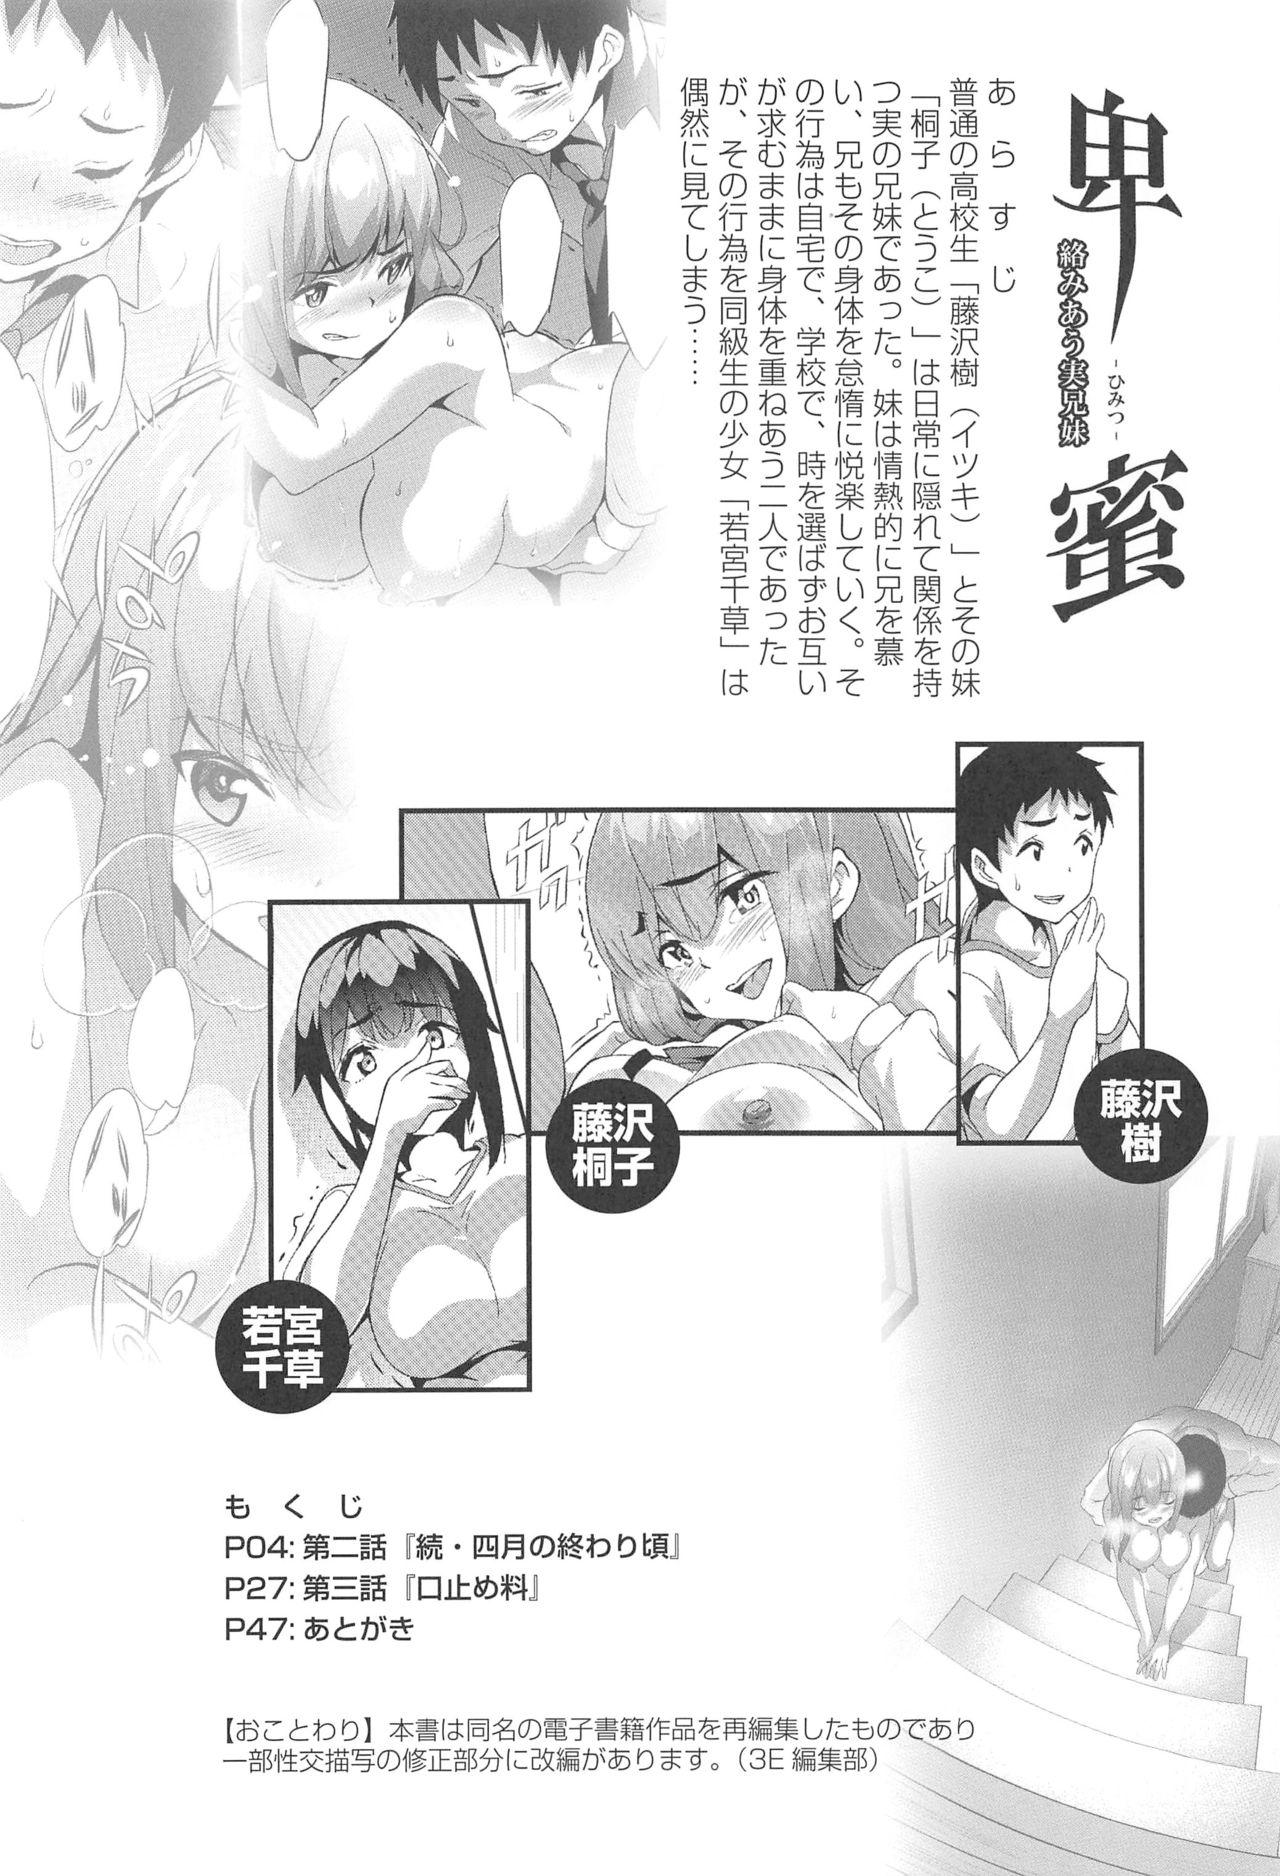 Gay Bukkakeboys Himitsu 2 & 3 "Zoku 4-gatsu no Owarigoro" "Kuchidomeryou" - Original Blowjob Contest - Page 3